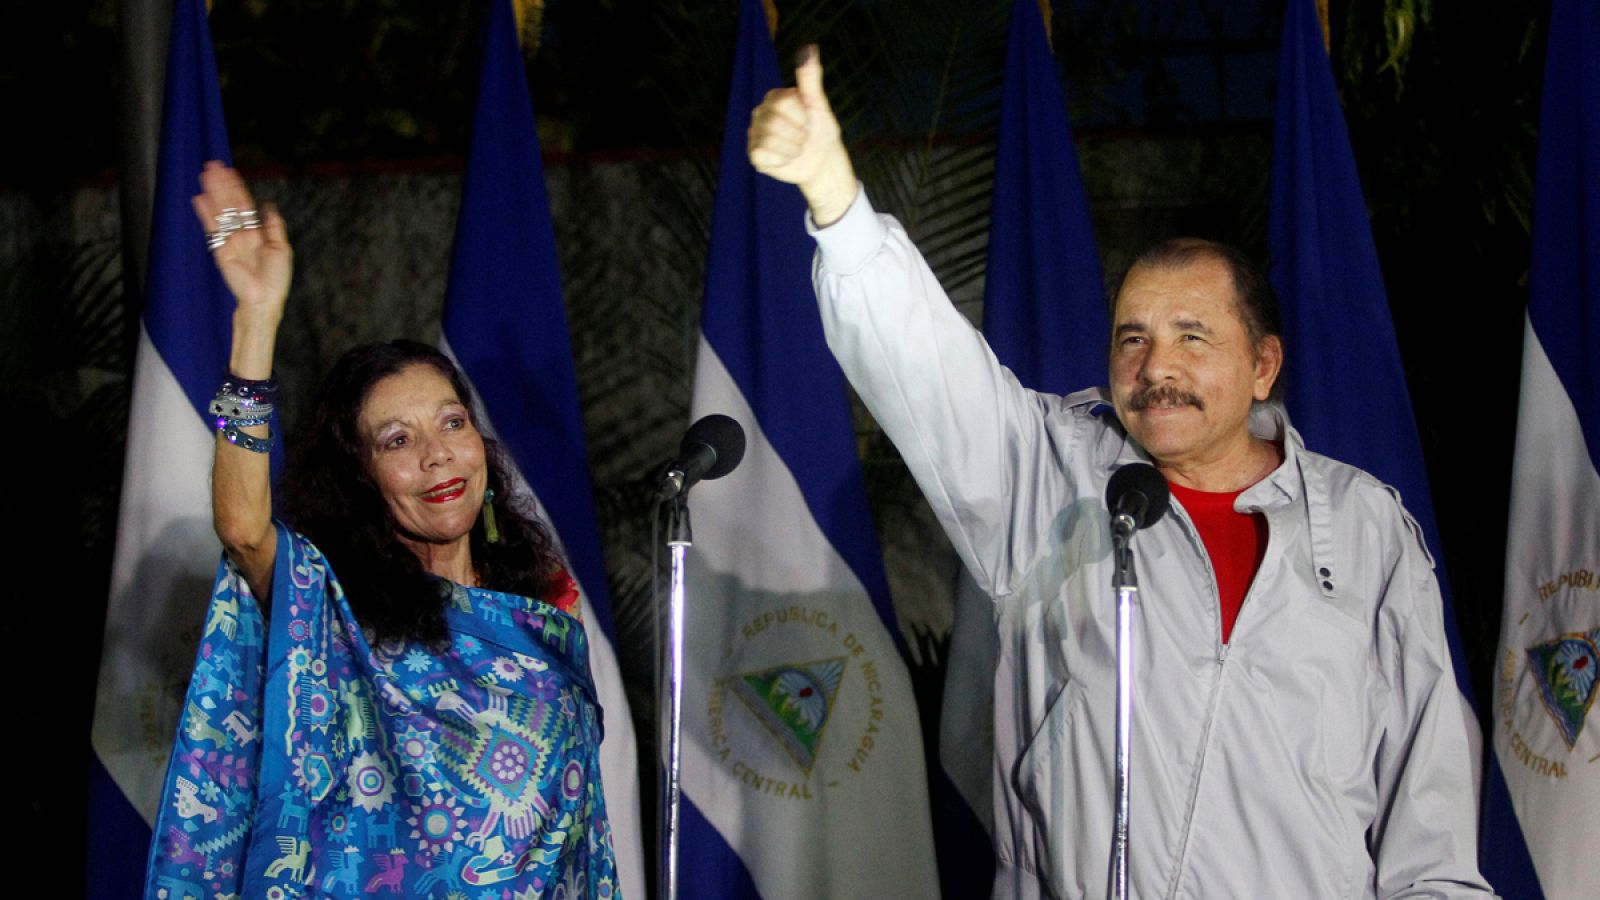 El presidente de Nicaragua, Daniel Ortega, junto a su mujer Rosario Murillo, candidata a la vicepresidencia.